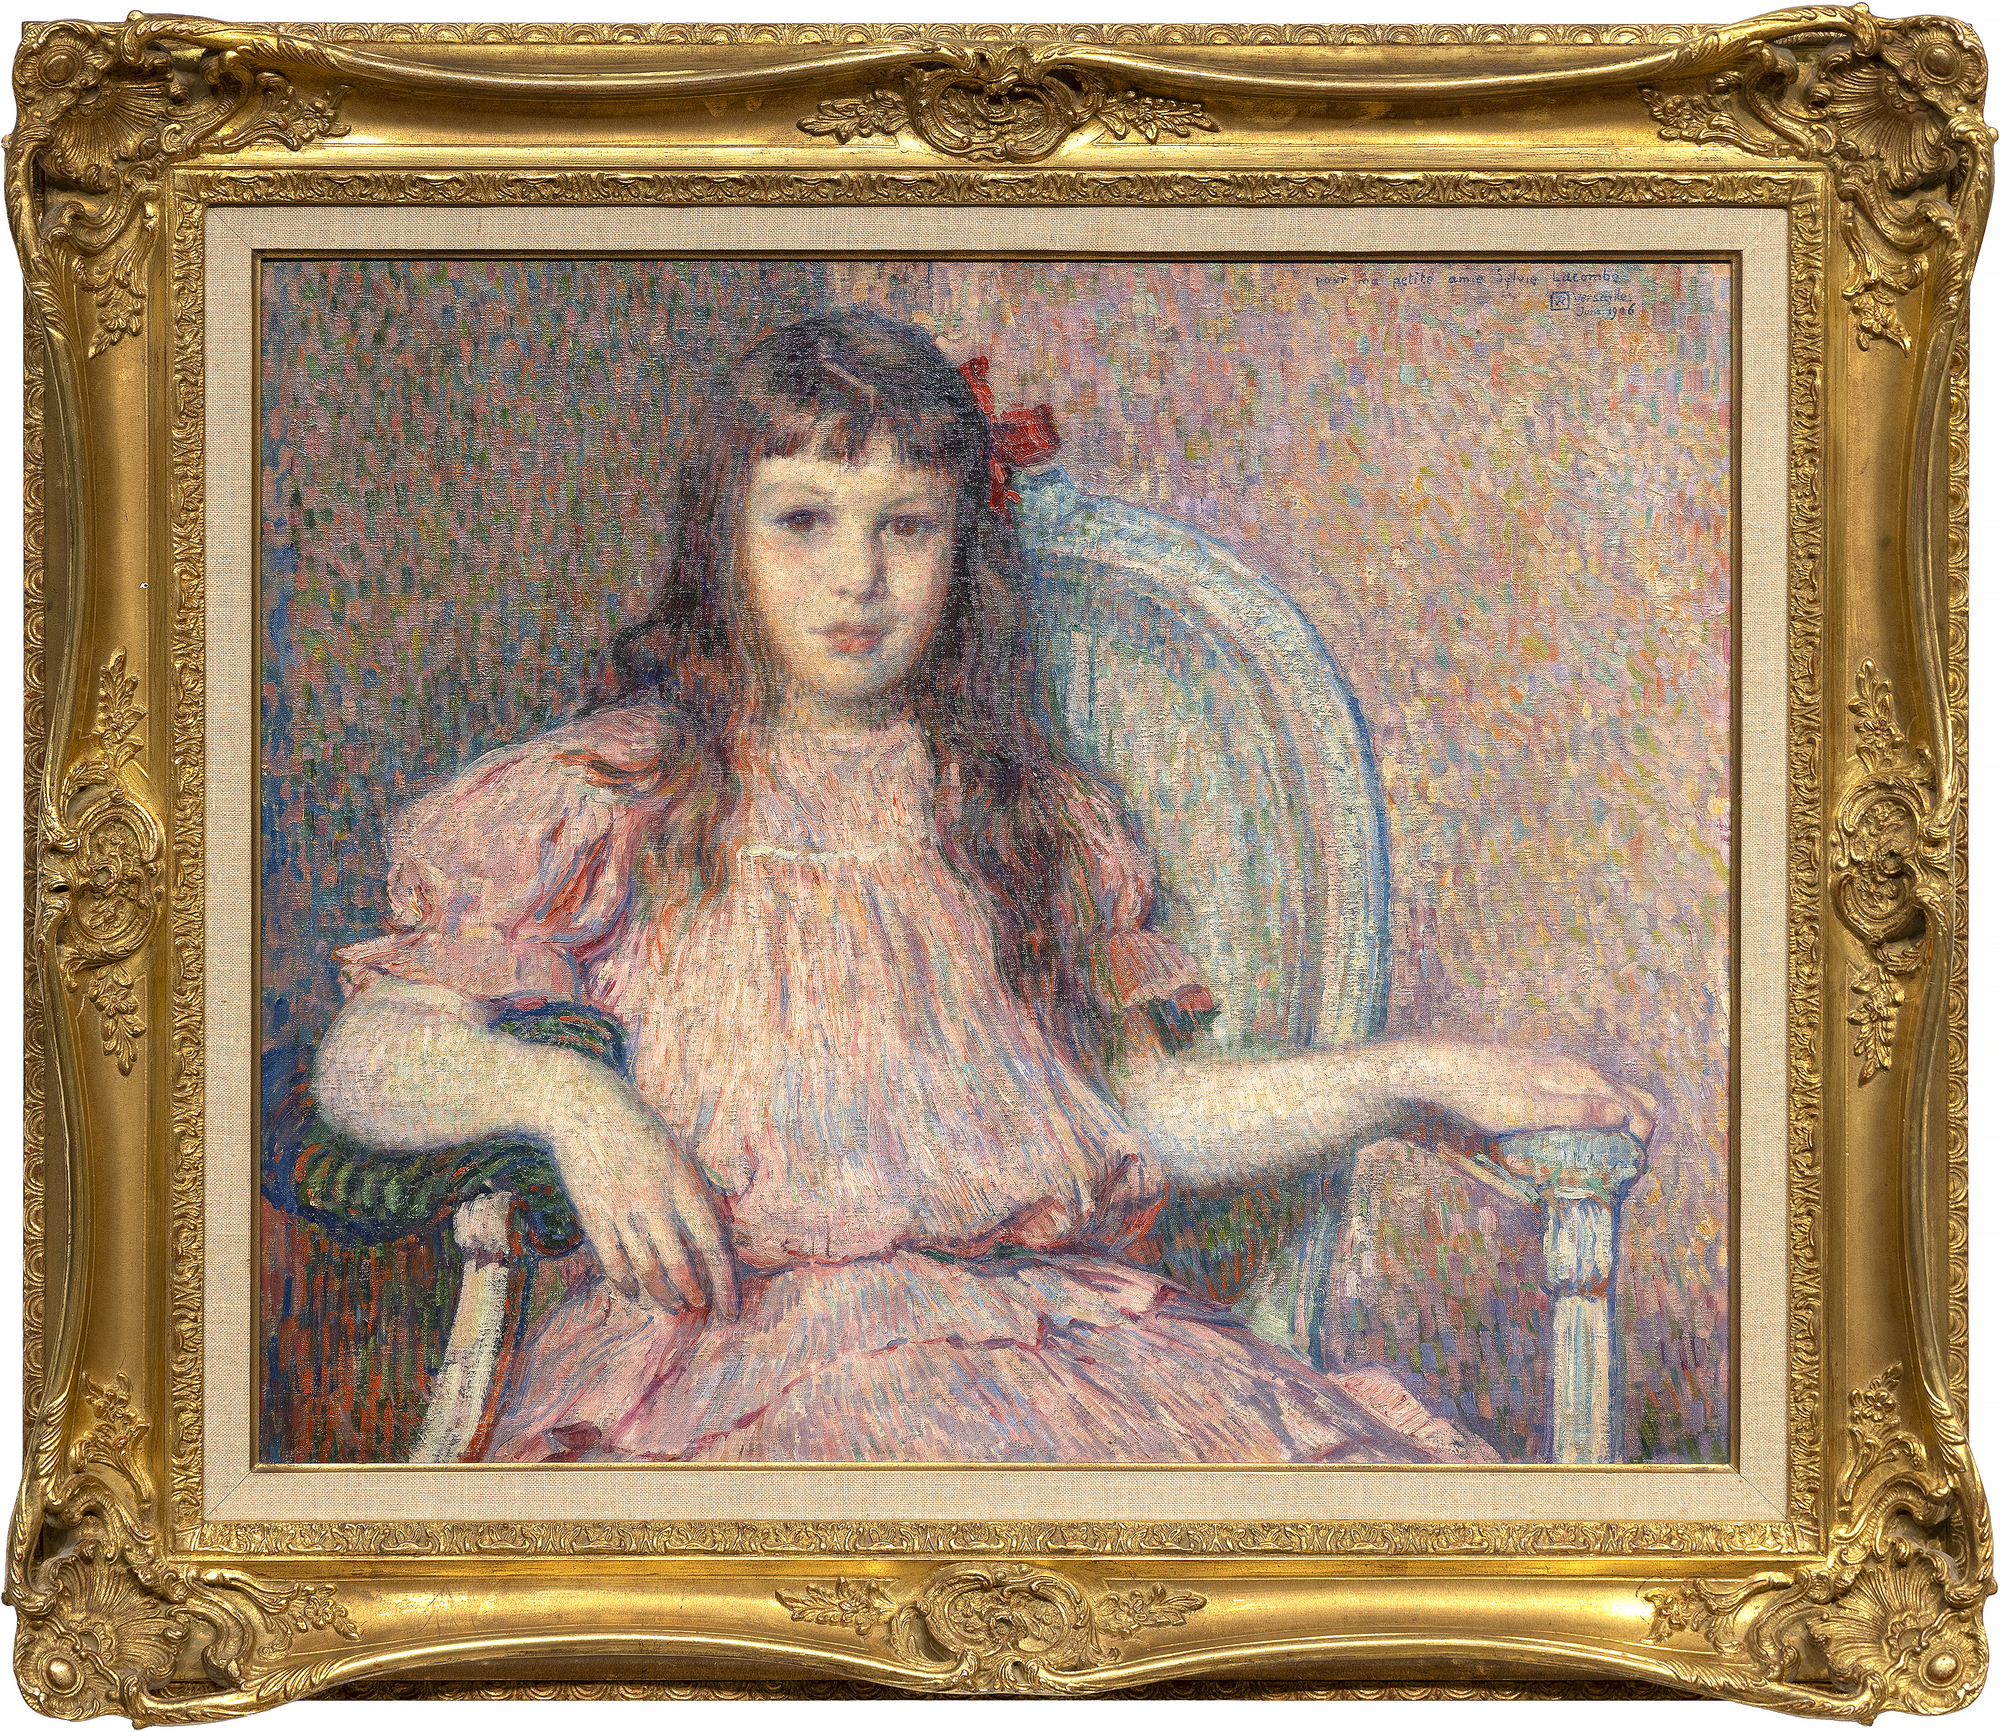 Le Portrait de Sylvie Lacombe, peint par Théo van Rysselberghe en 1906, est un chef-d'œuvre classique réalisé par l'un des portraitistes les plus raffinés et les plus cohérents de son époque. La couleur est harmonieuse, le pinceau vigoureux et adapté à sa tâche matérielle, son corps et son visage sont vrais et révélateurs. La personne représentée est la fille de son grand ami, le peintre Georges Lacombe, qui a partagé une association étroite avec Gauguin et a été membre des Nabis avec les artistes Bonnard, Denis et Vuillard, entre autres. Si nous connaissons aujourd'hui Sylvie Lacombe, c'est grâce à l'habileté de Van Rysselberghe à rendre les subtiles expressions du visage et, par une observation minutieuse et un souci du détail, à donner un aperçu de son monde intérieur. Il a choisi un regard direct, ses yeux vers les vôtres, une alliance inéluctable entre le sujet et le spectateur, quelle que soit notre relation physique avec le tableau. Van Rysselberghe avait largement abandonné la technique pointilliste lorsqu'il a peint ce portrait. Mais il a continué à appliquer les principes de la théorie des couleurs en utilisant des teintes de rouge - roses et mauves - contre des verts pour créer une palette harmonieuse et améliorée de couleurs complémentaires à laquelle il a ajouté un accent fort pour attirer le regard - un nœud rouge intensément saturé posé de manière asymétrique sur le côté de sa tête.